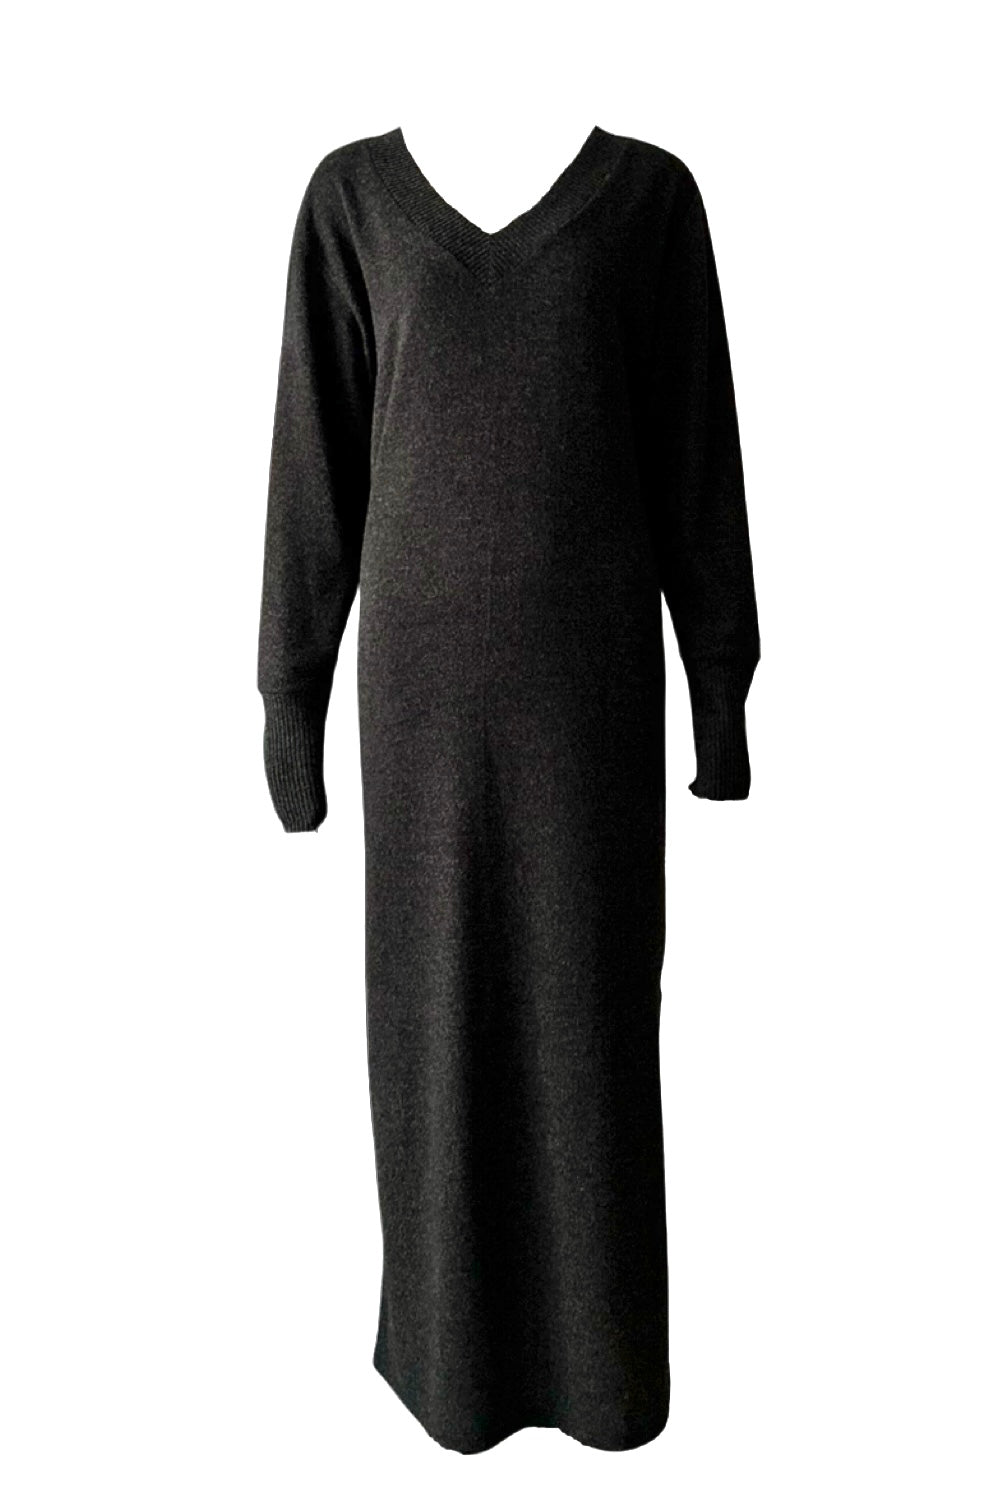 V neck knit dress / Heather black